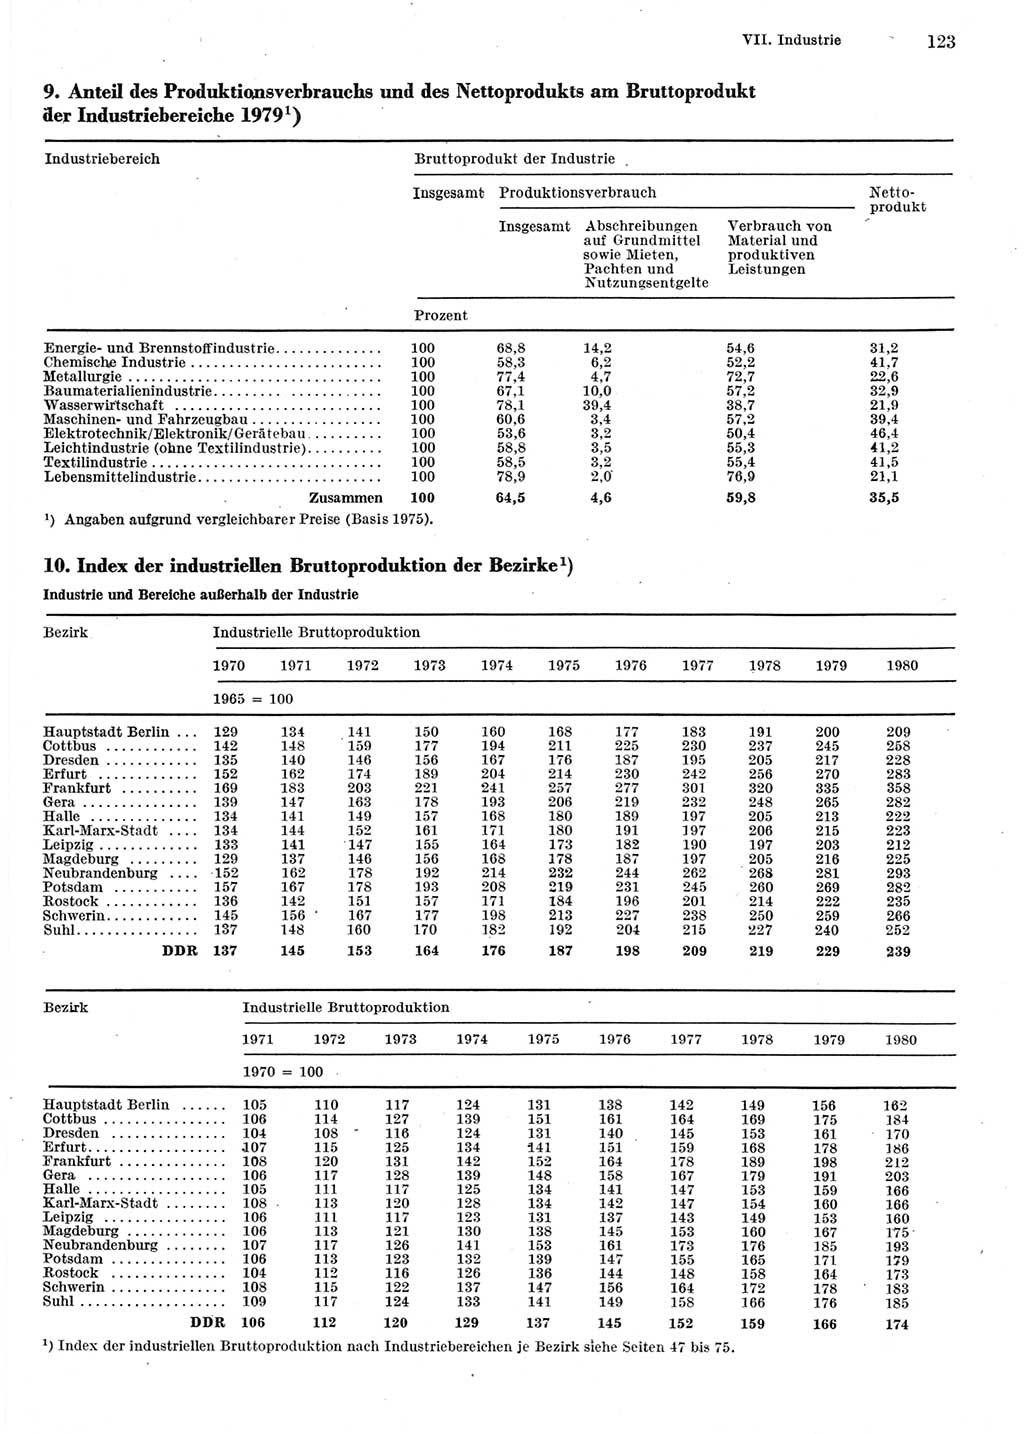 Statistisches Jahrbuch der Deutschen Demokratischen Republik (DDR) 1981, Seite 123 (Stat. Jb. DDR 1981, S. 123)